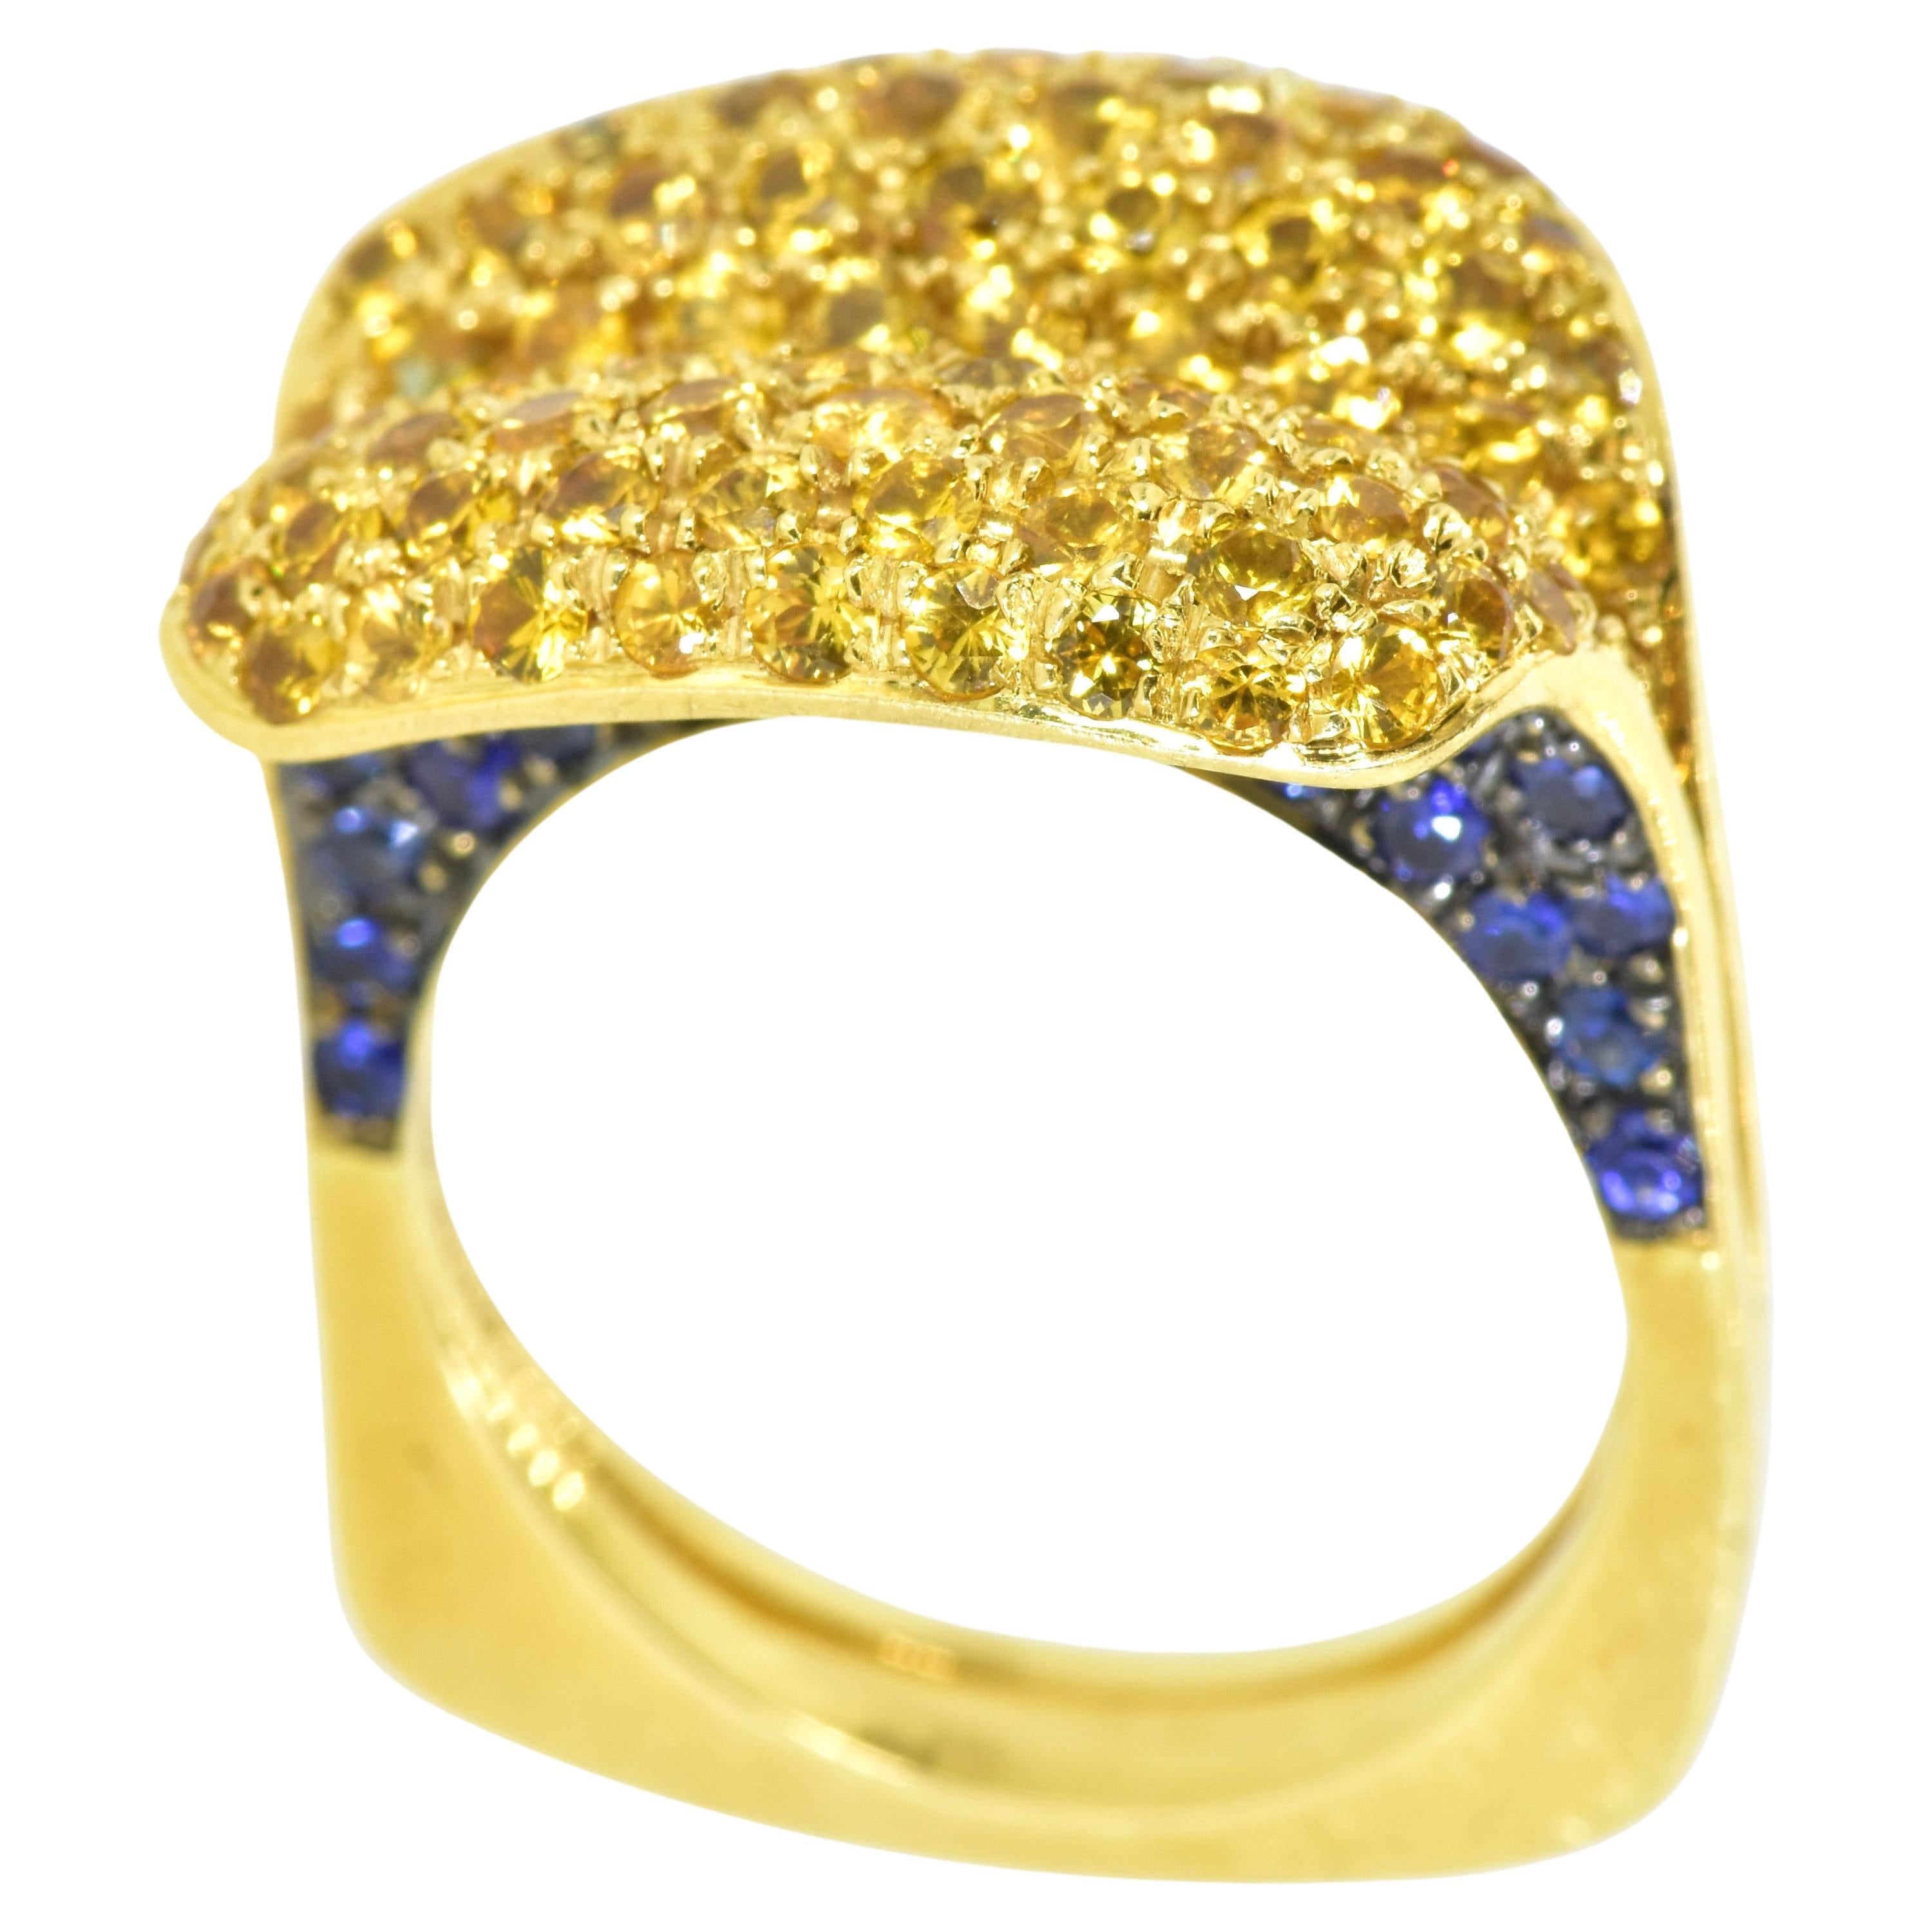 Gelbe und blaue Saphire, eingefasst in 18 Karat Gelbgold, in einem sehr originellen Ring des Schmuckdesigners Salavetti, der für die Verwendung edler Materialien bekannt ist. Die eingefassten natürlichen goldenen (gelben) Saphire sind von einem